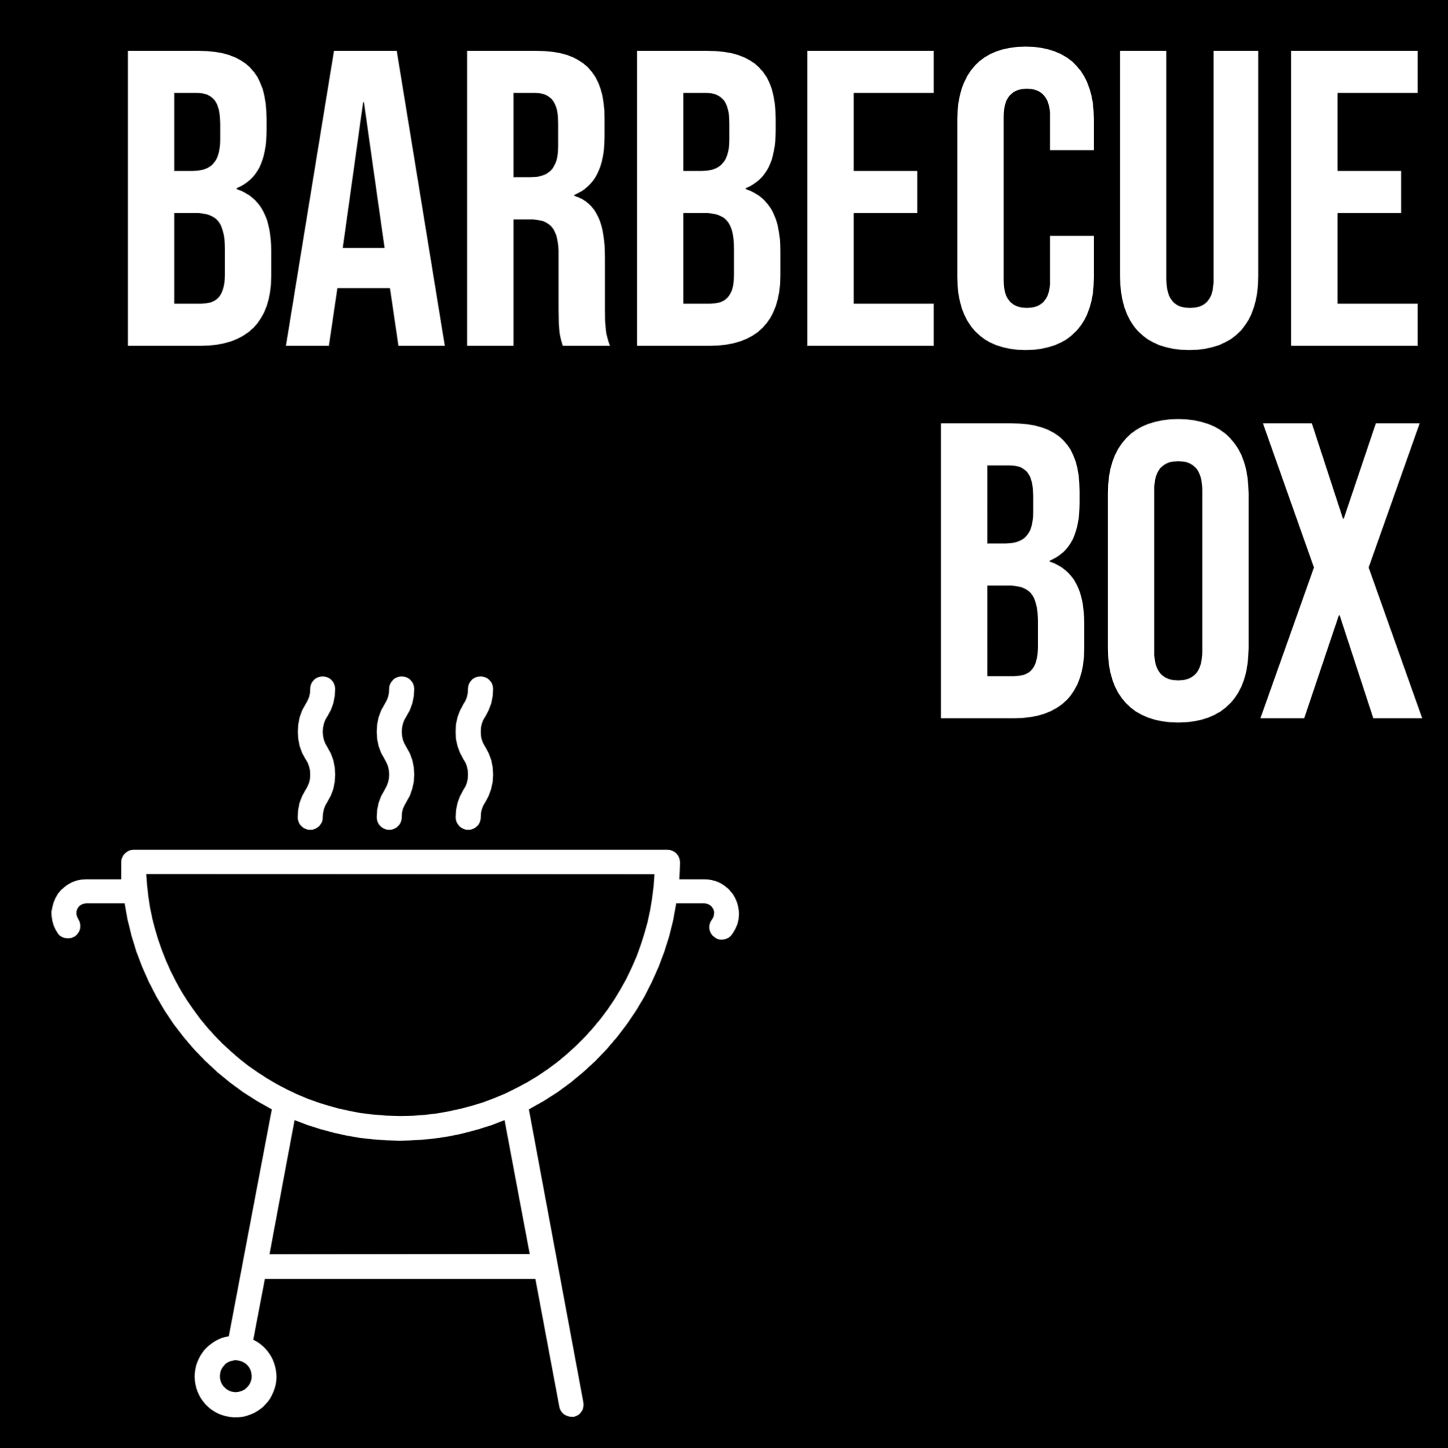 Barbecue Box